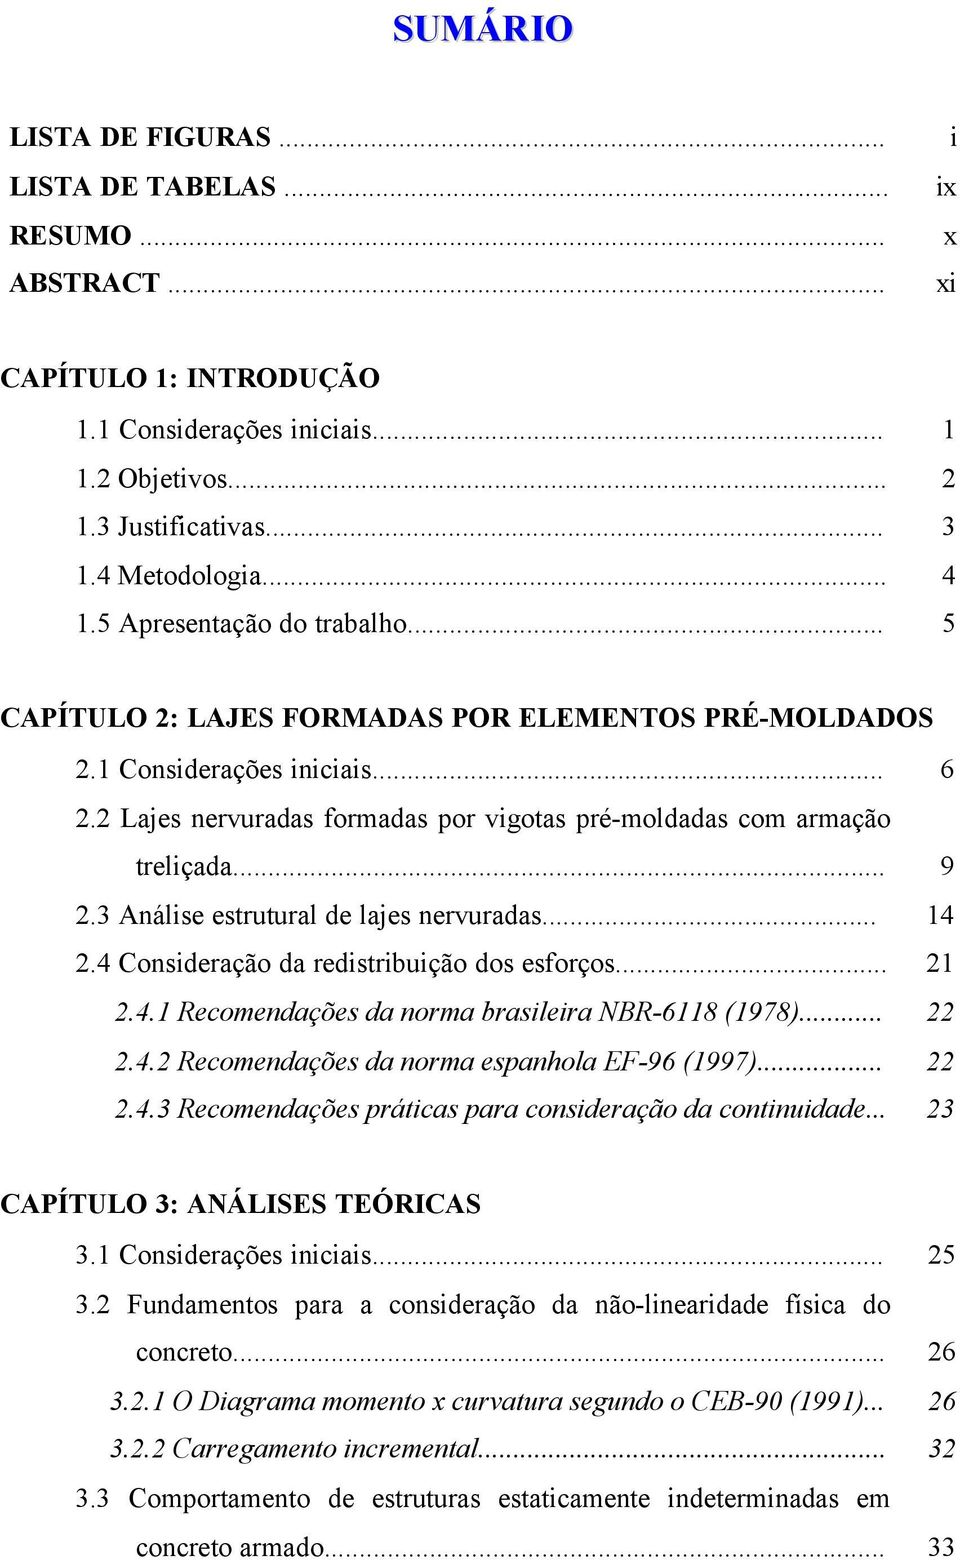 3 Análise estrutural de lajes nervuradas... 14 2.4 Consideração da redistribuição dos esforços... 21 2.4.1 Recomendações da norma brasileira NBR-6118 (1978)... 22 2.4.2 Recomendações da norma espanhola EF-96 (1997).